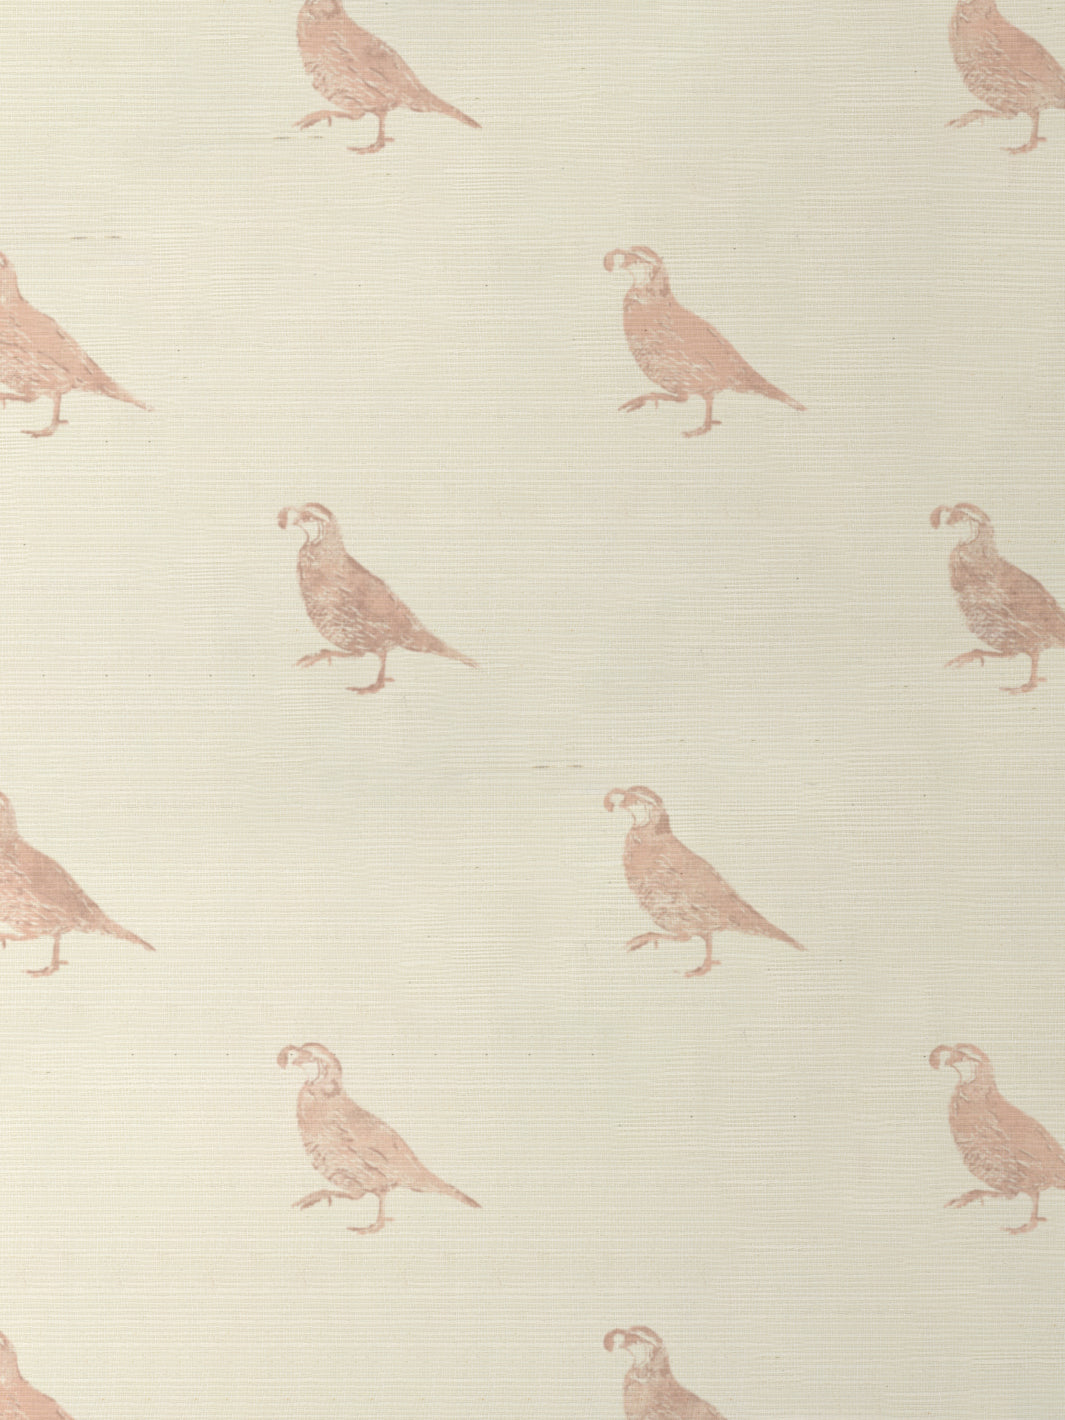 &#39;California Quail&#39; Grasscloth Wallpaper - Pink